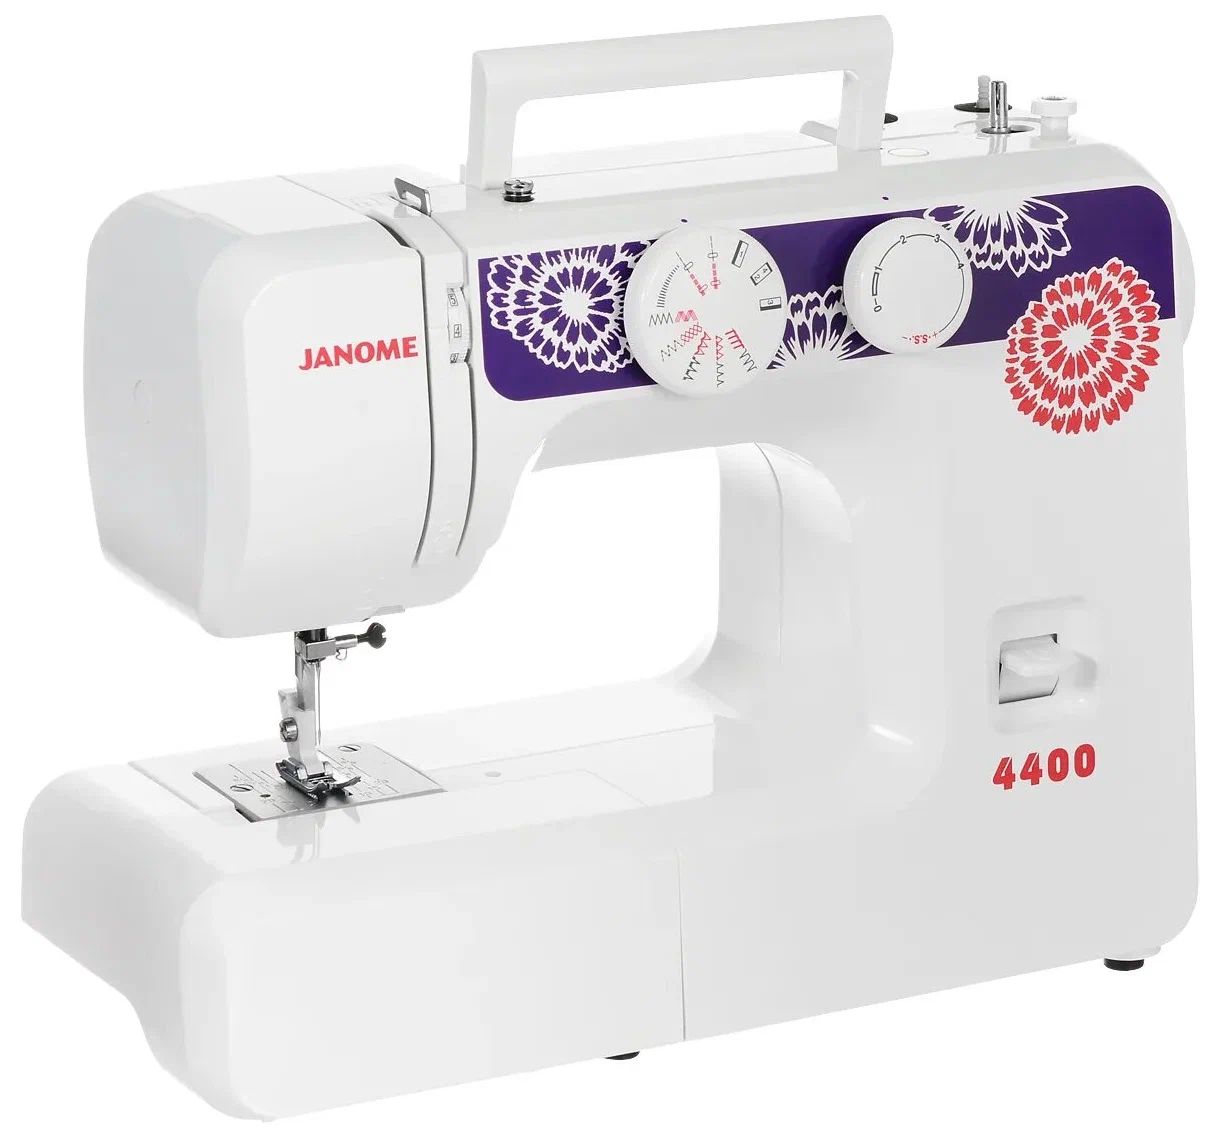 Швейная машина Janome 4400 белый, фиолетовый швейная машина janome 415 белый фиолетовый